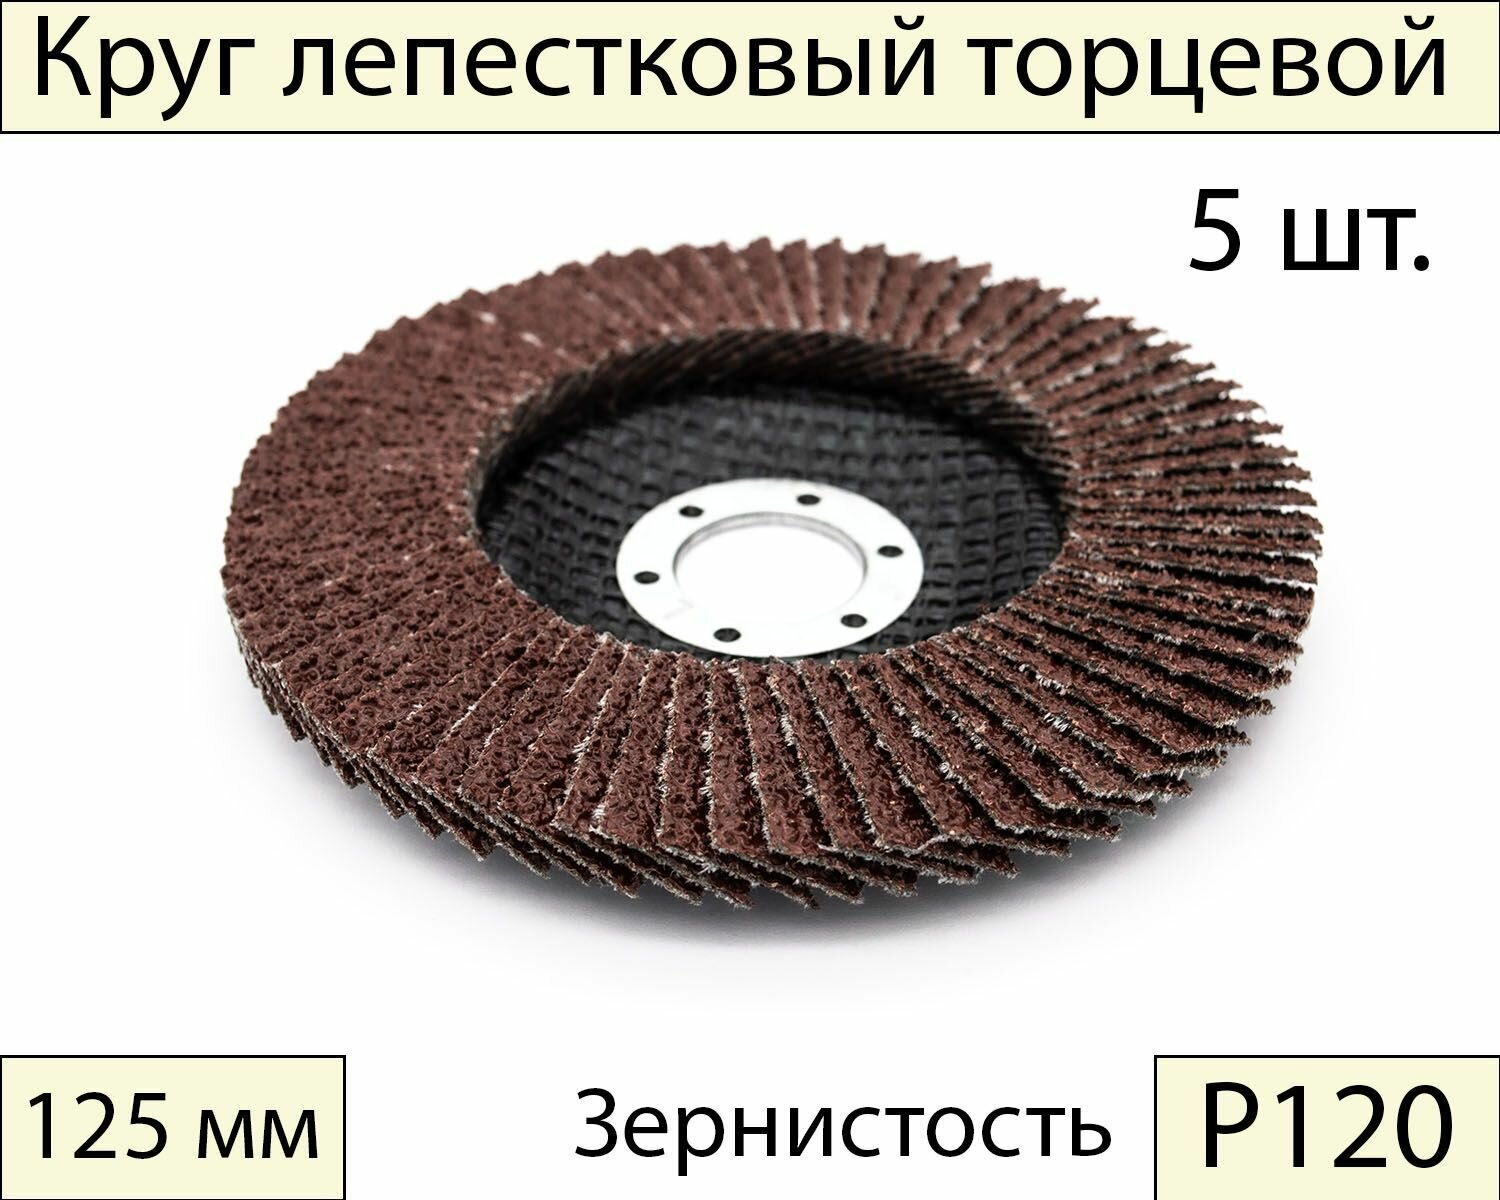 Круги шлифовальные абразивные / лепестковый торцевой диск 125 мм, Р120, 5 шт.